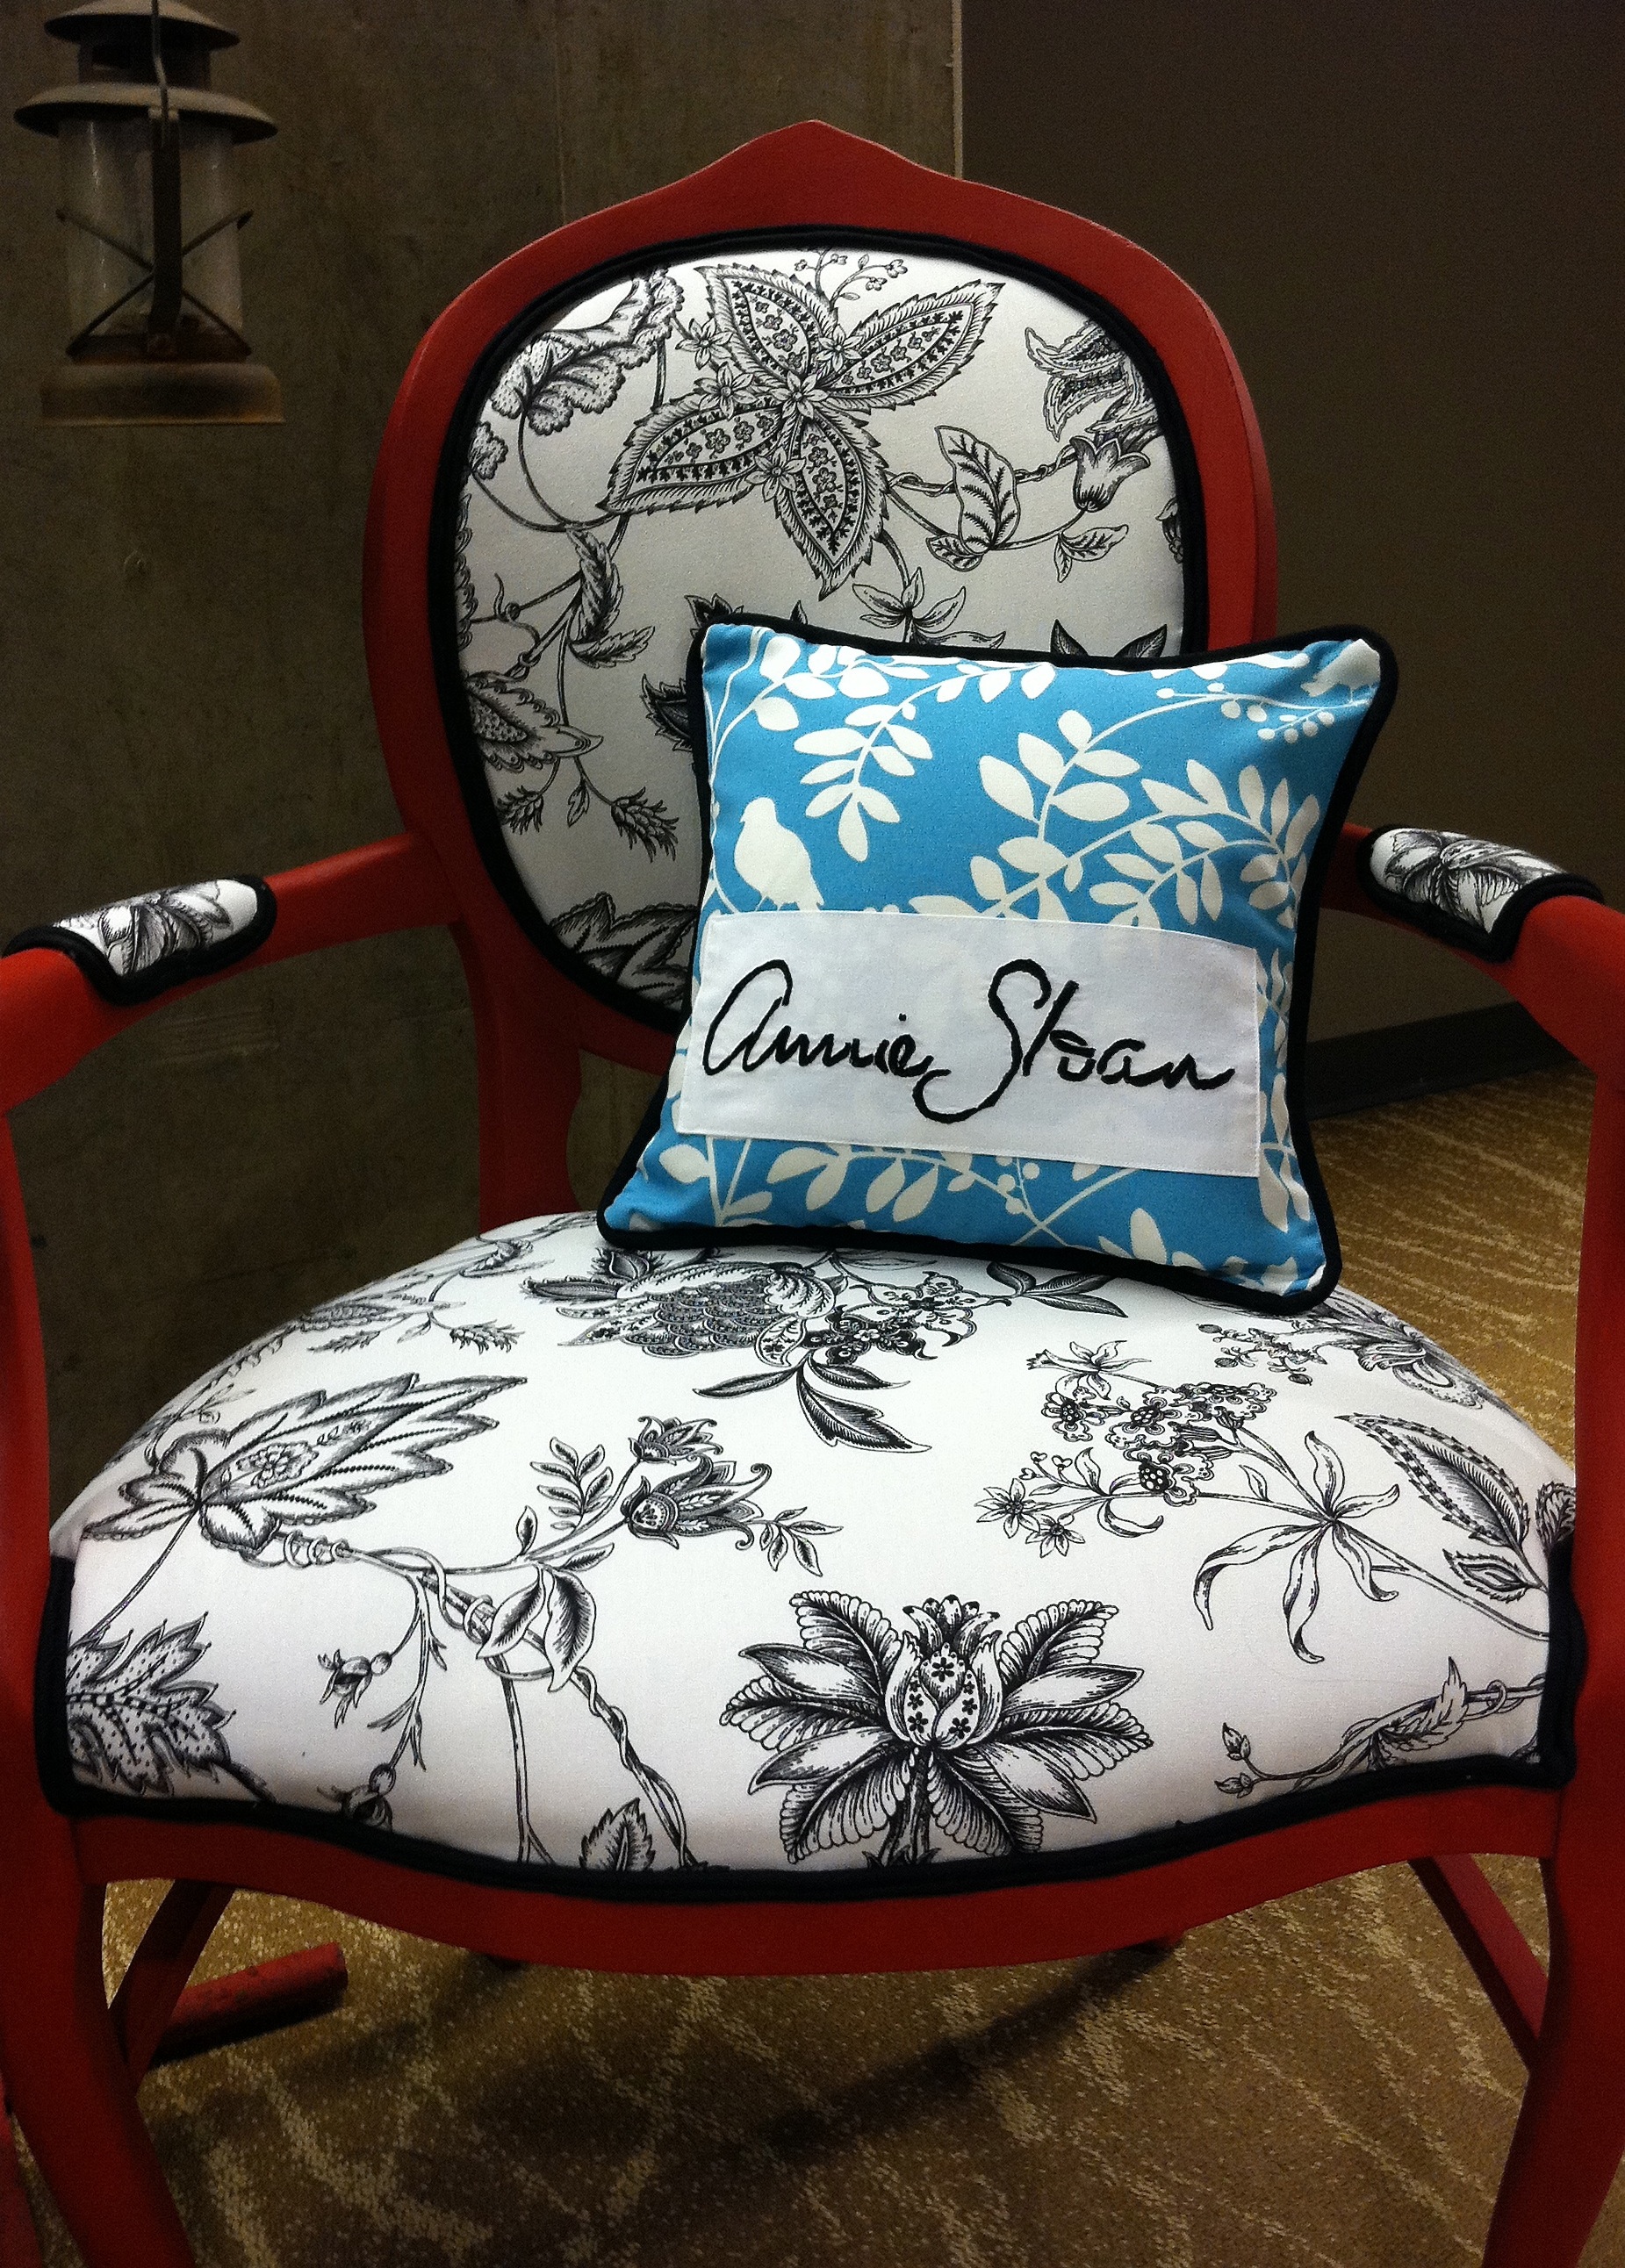 Annie Sloan Chalk Paint Chairs…AGAIN!